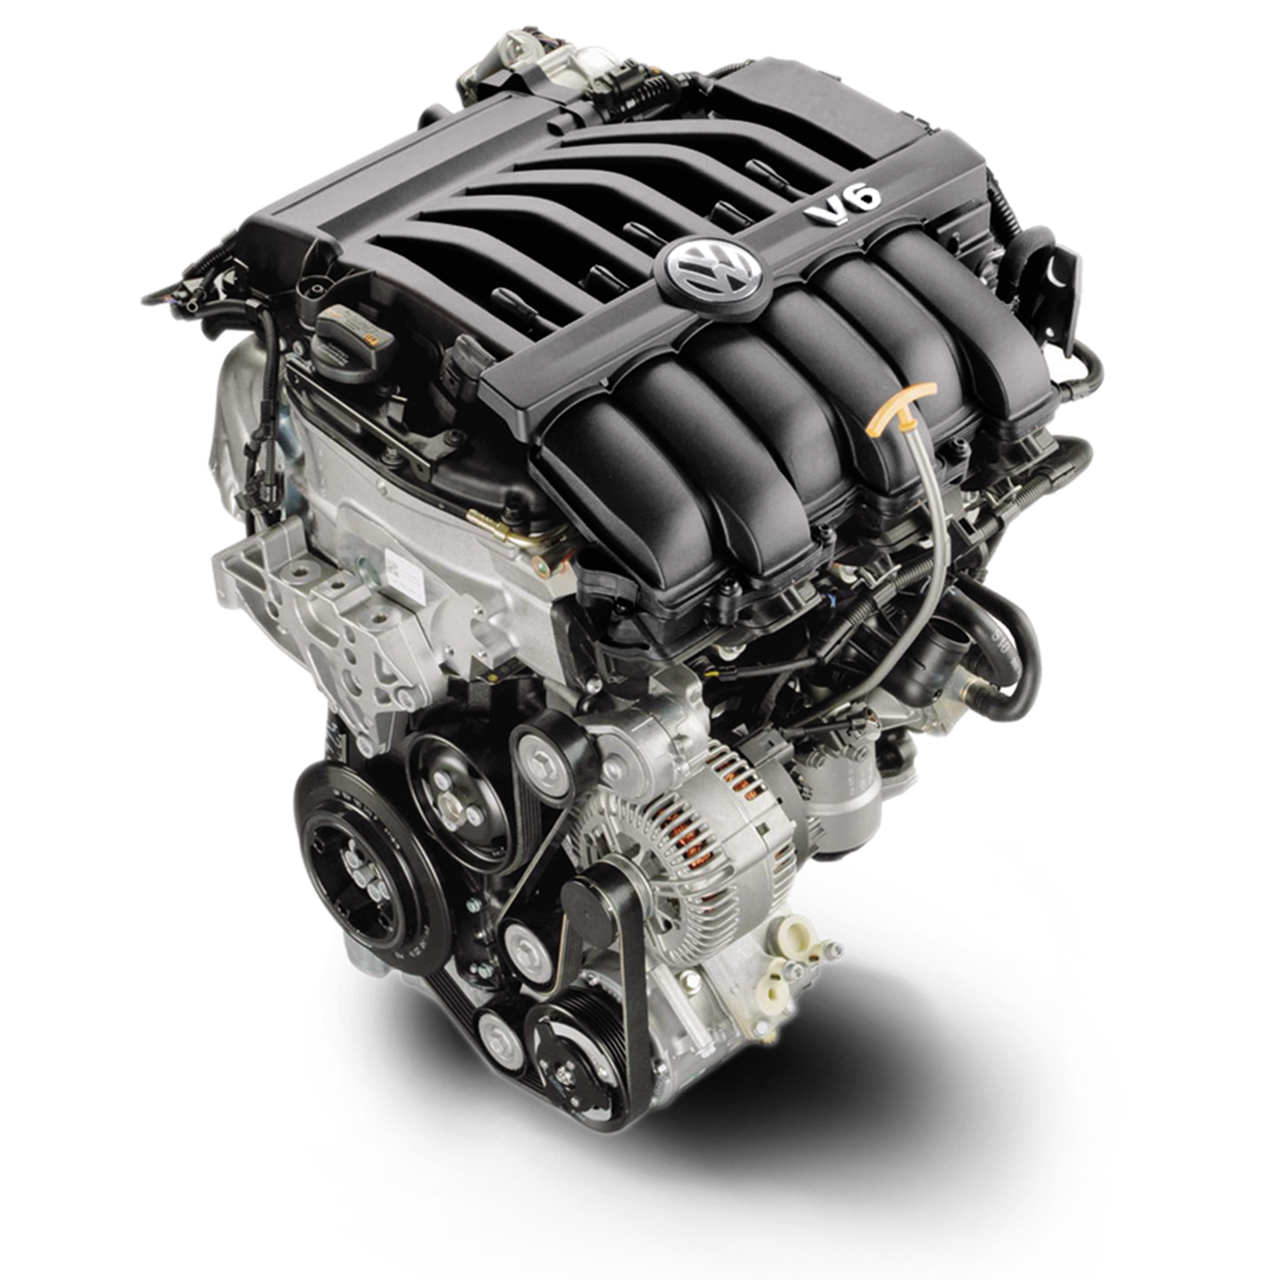 Купить двигатель v6. VW Touareg 3.6 v6 FSI мотор. Двигатель vr6 3.6 Volkswagen. Двигатель вр6 Фольксваген Туарег. Двигатель vr6 3.2 Volkswagen.